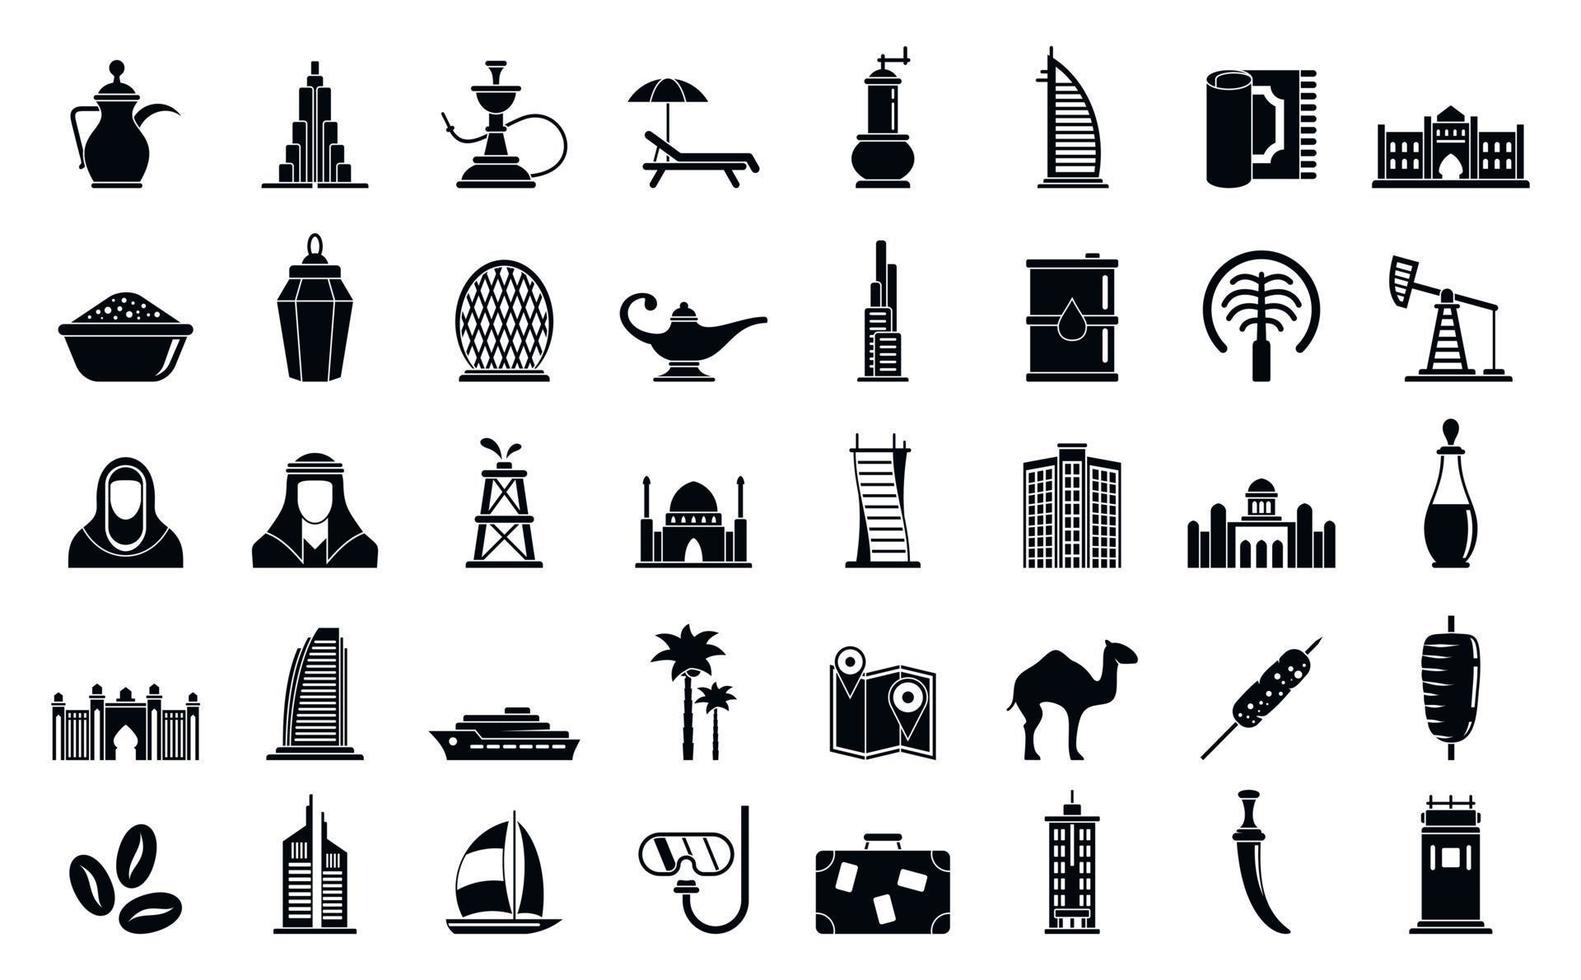 Dubai icons set, simple style vector